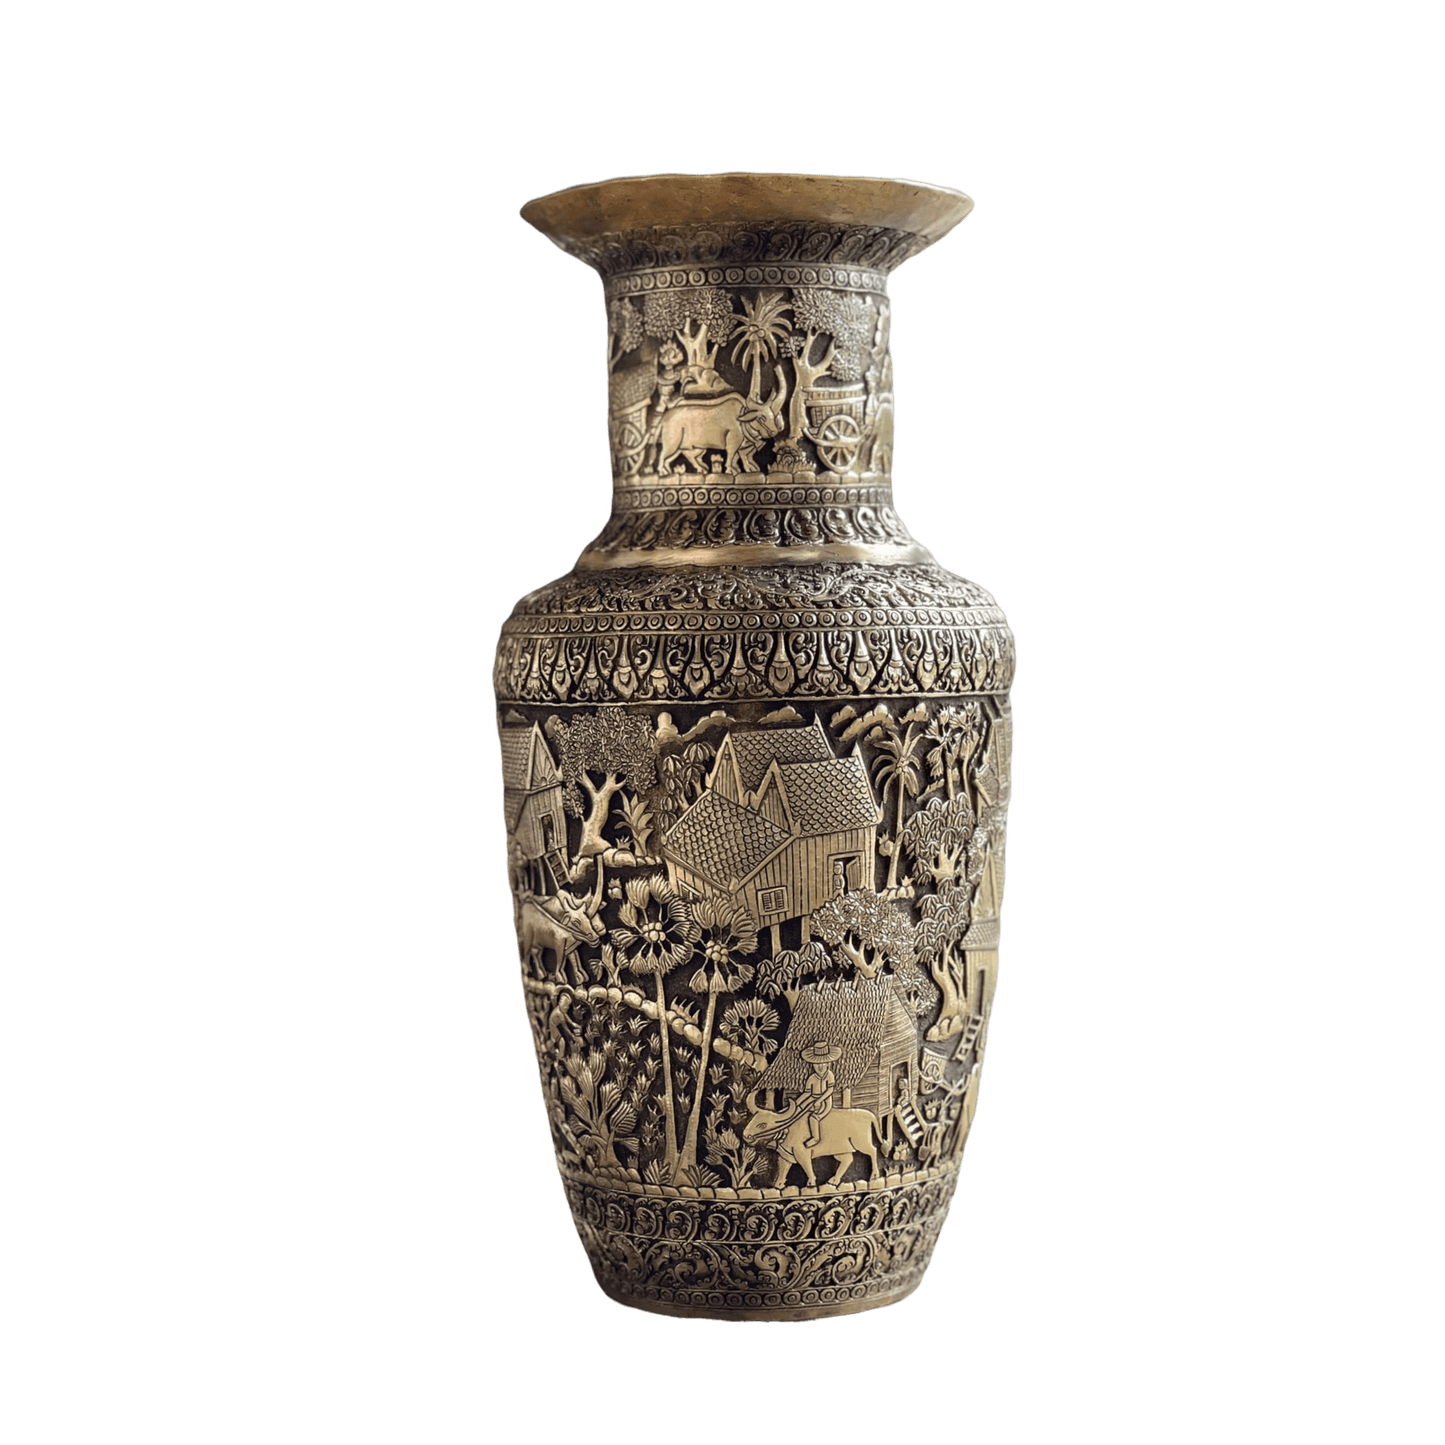 Royal Solid Brass Niello Flower Vase - Rural Khmer 